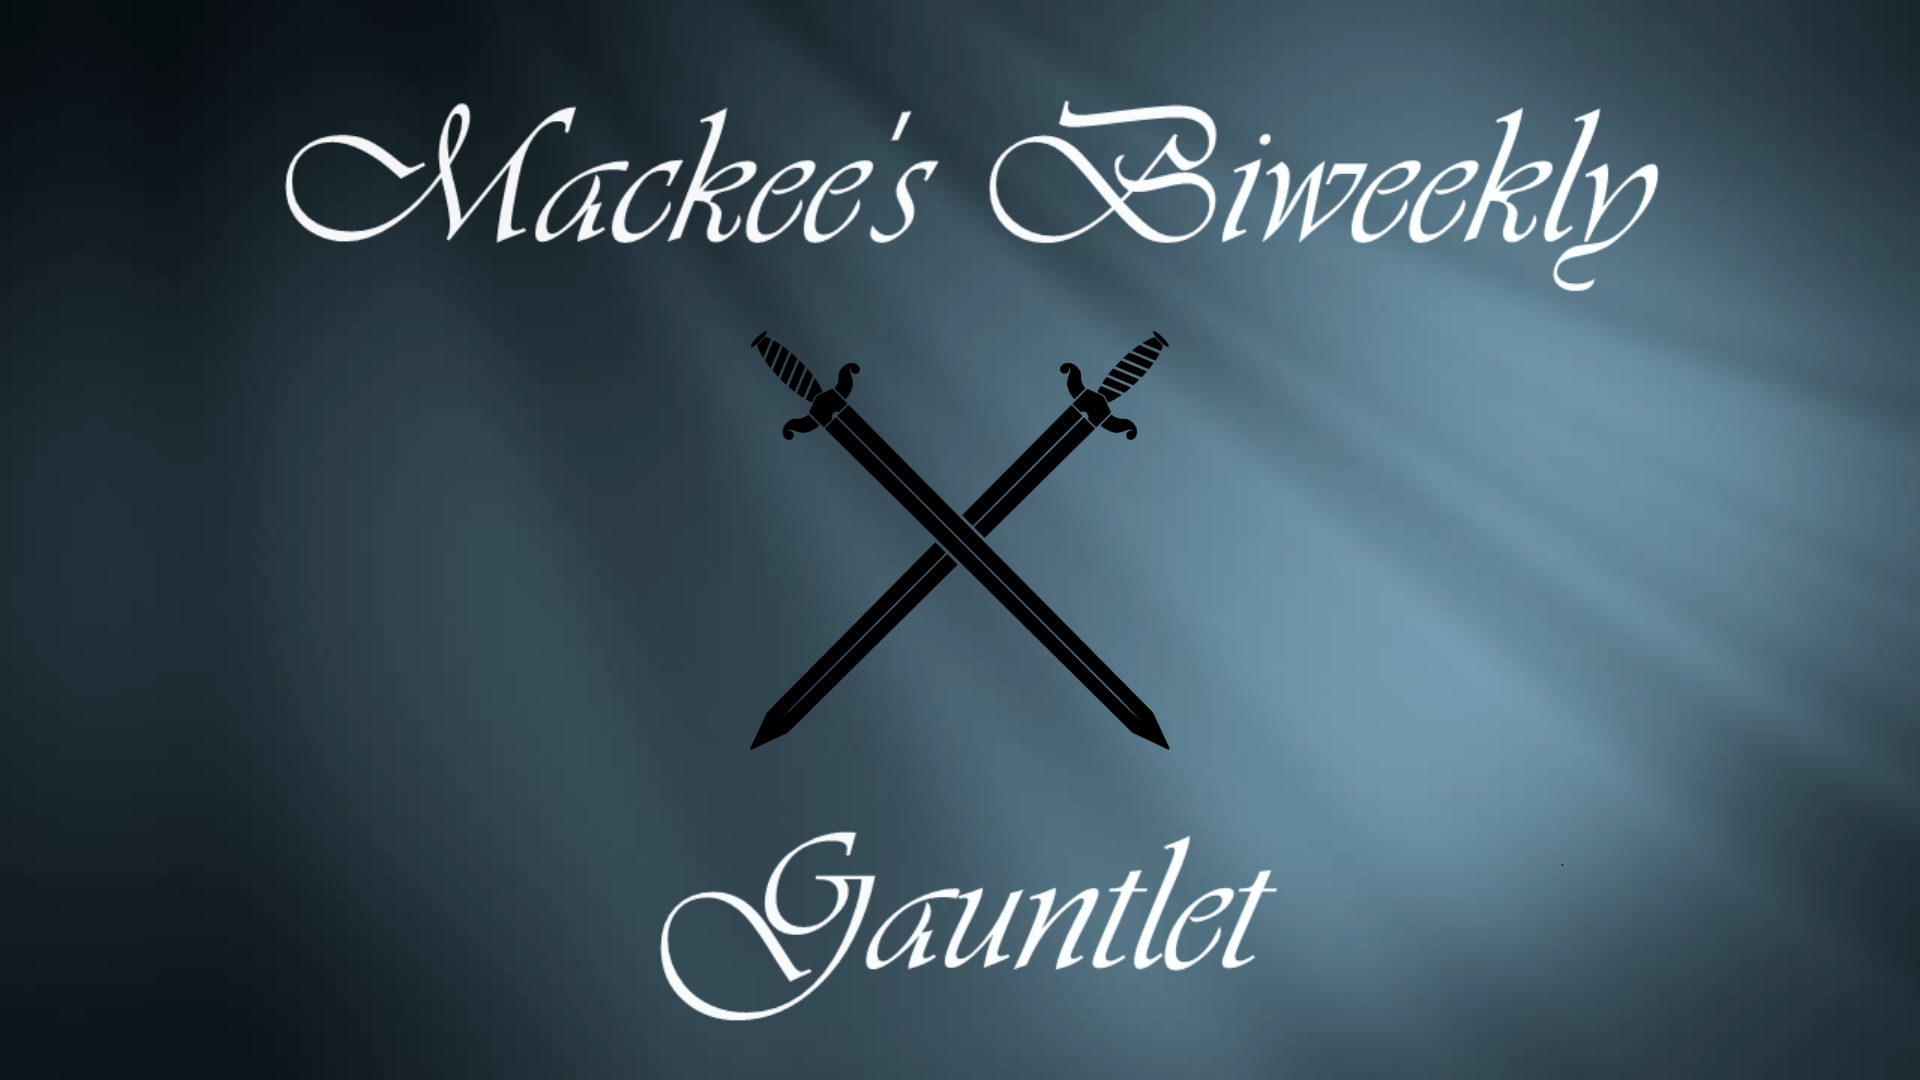 Mackee's Biweekly Gauntlet logo